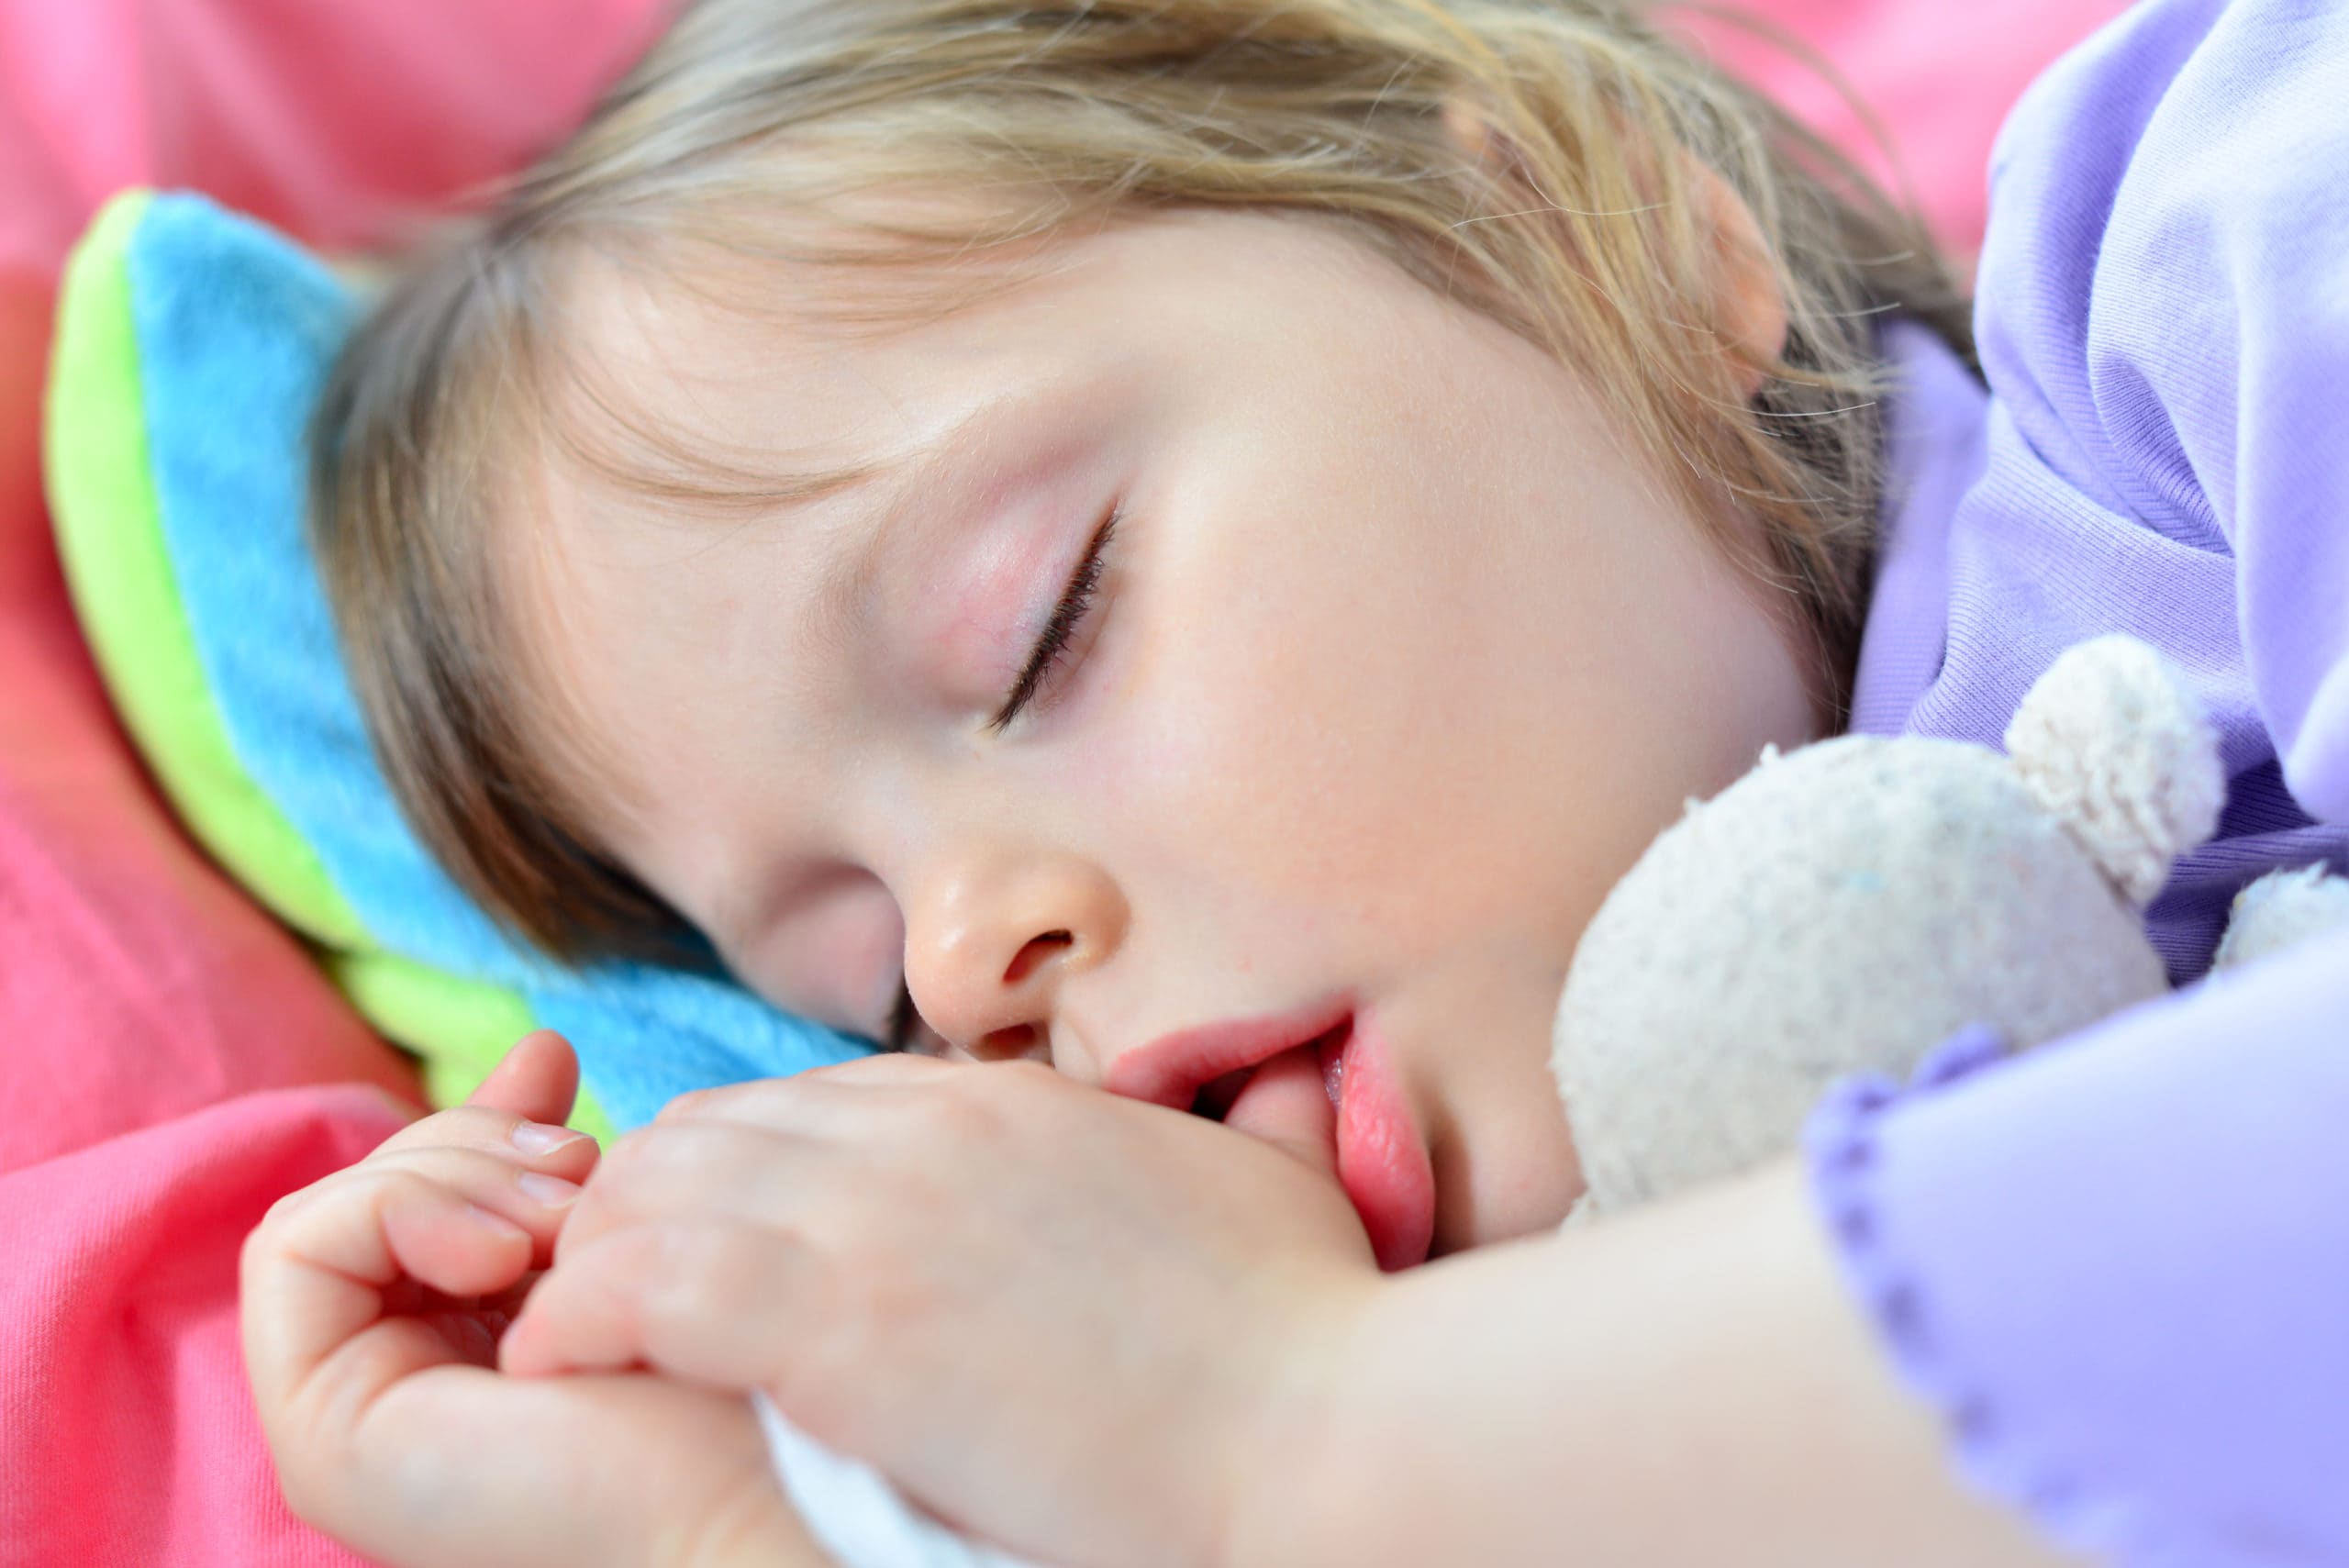 Спящей девушке палец. Дети спят с открытыми ртами. Спящие дети с открытым ртом. Ребенок с пальцем во рту.